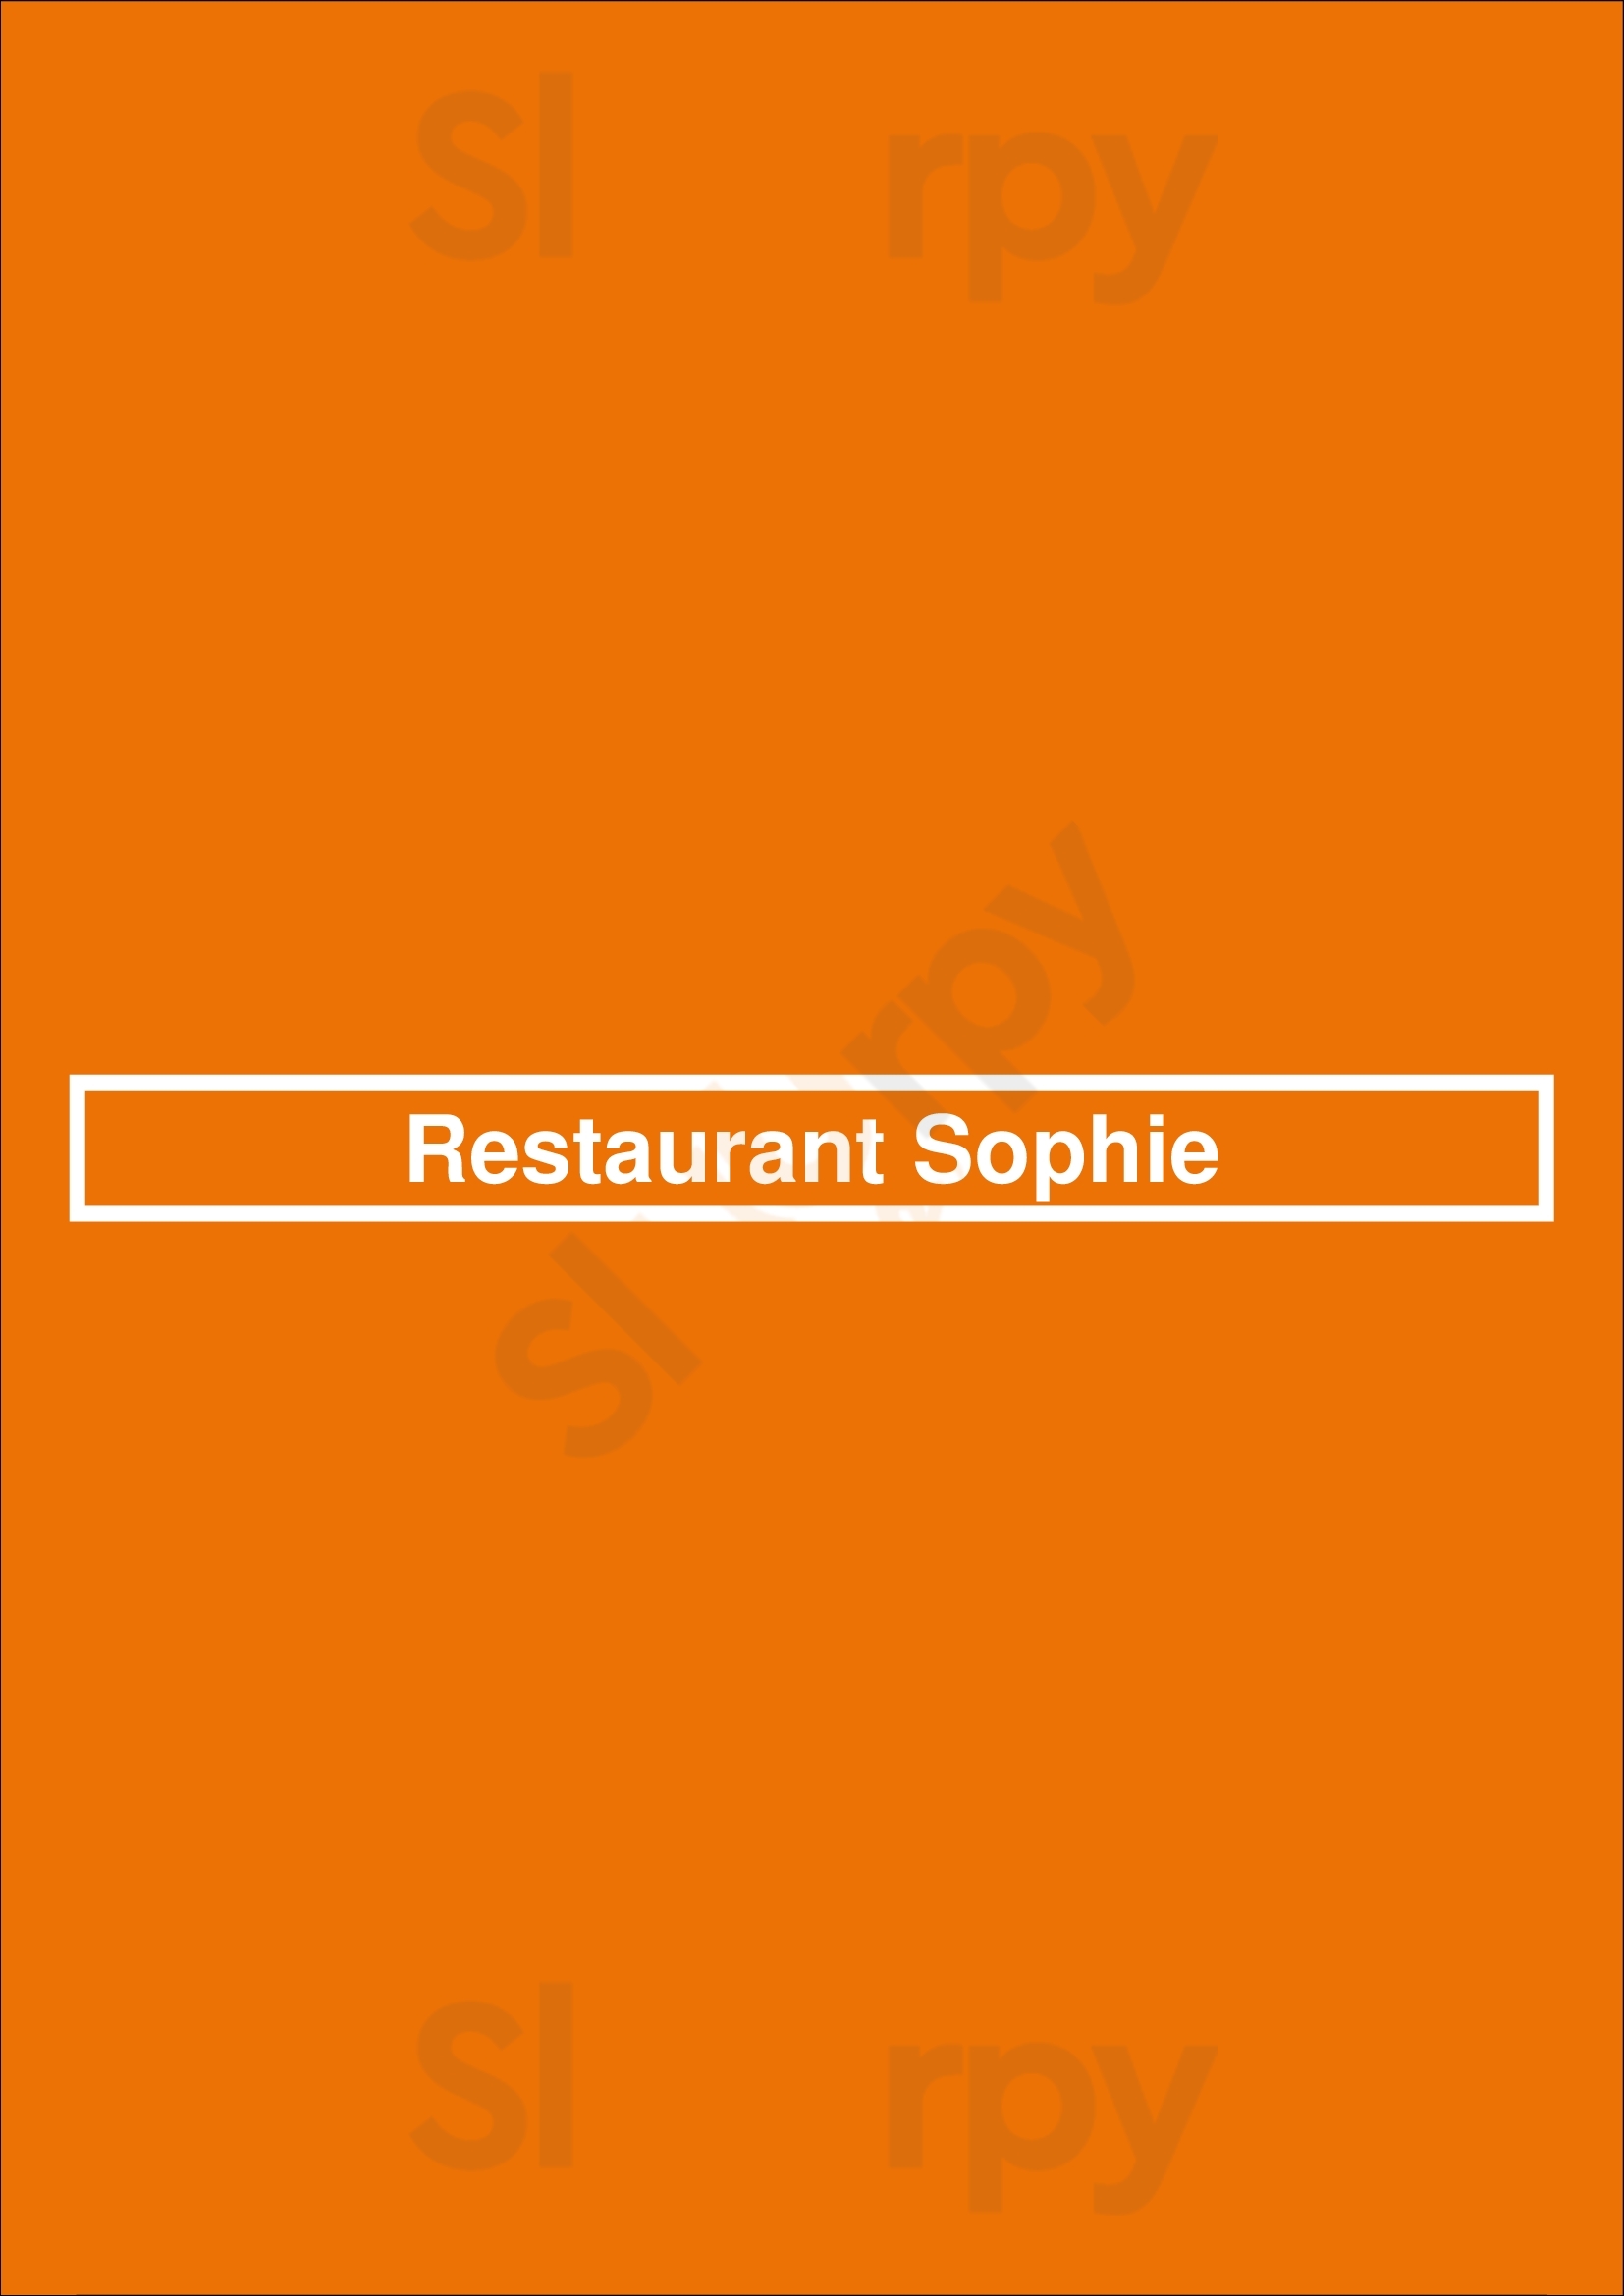 Restaurant Sophie Wassenaar Menu - 1